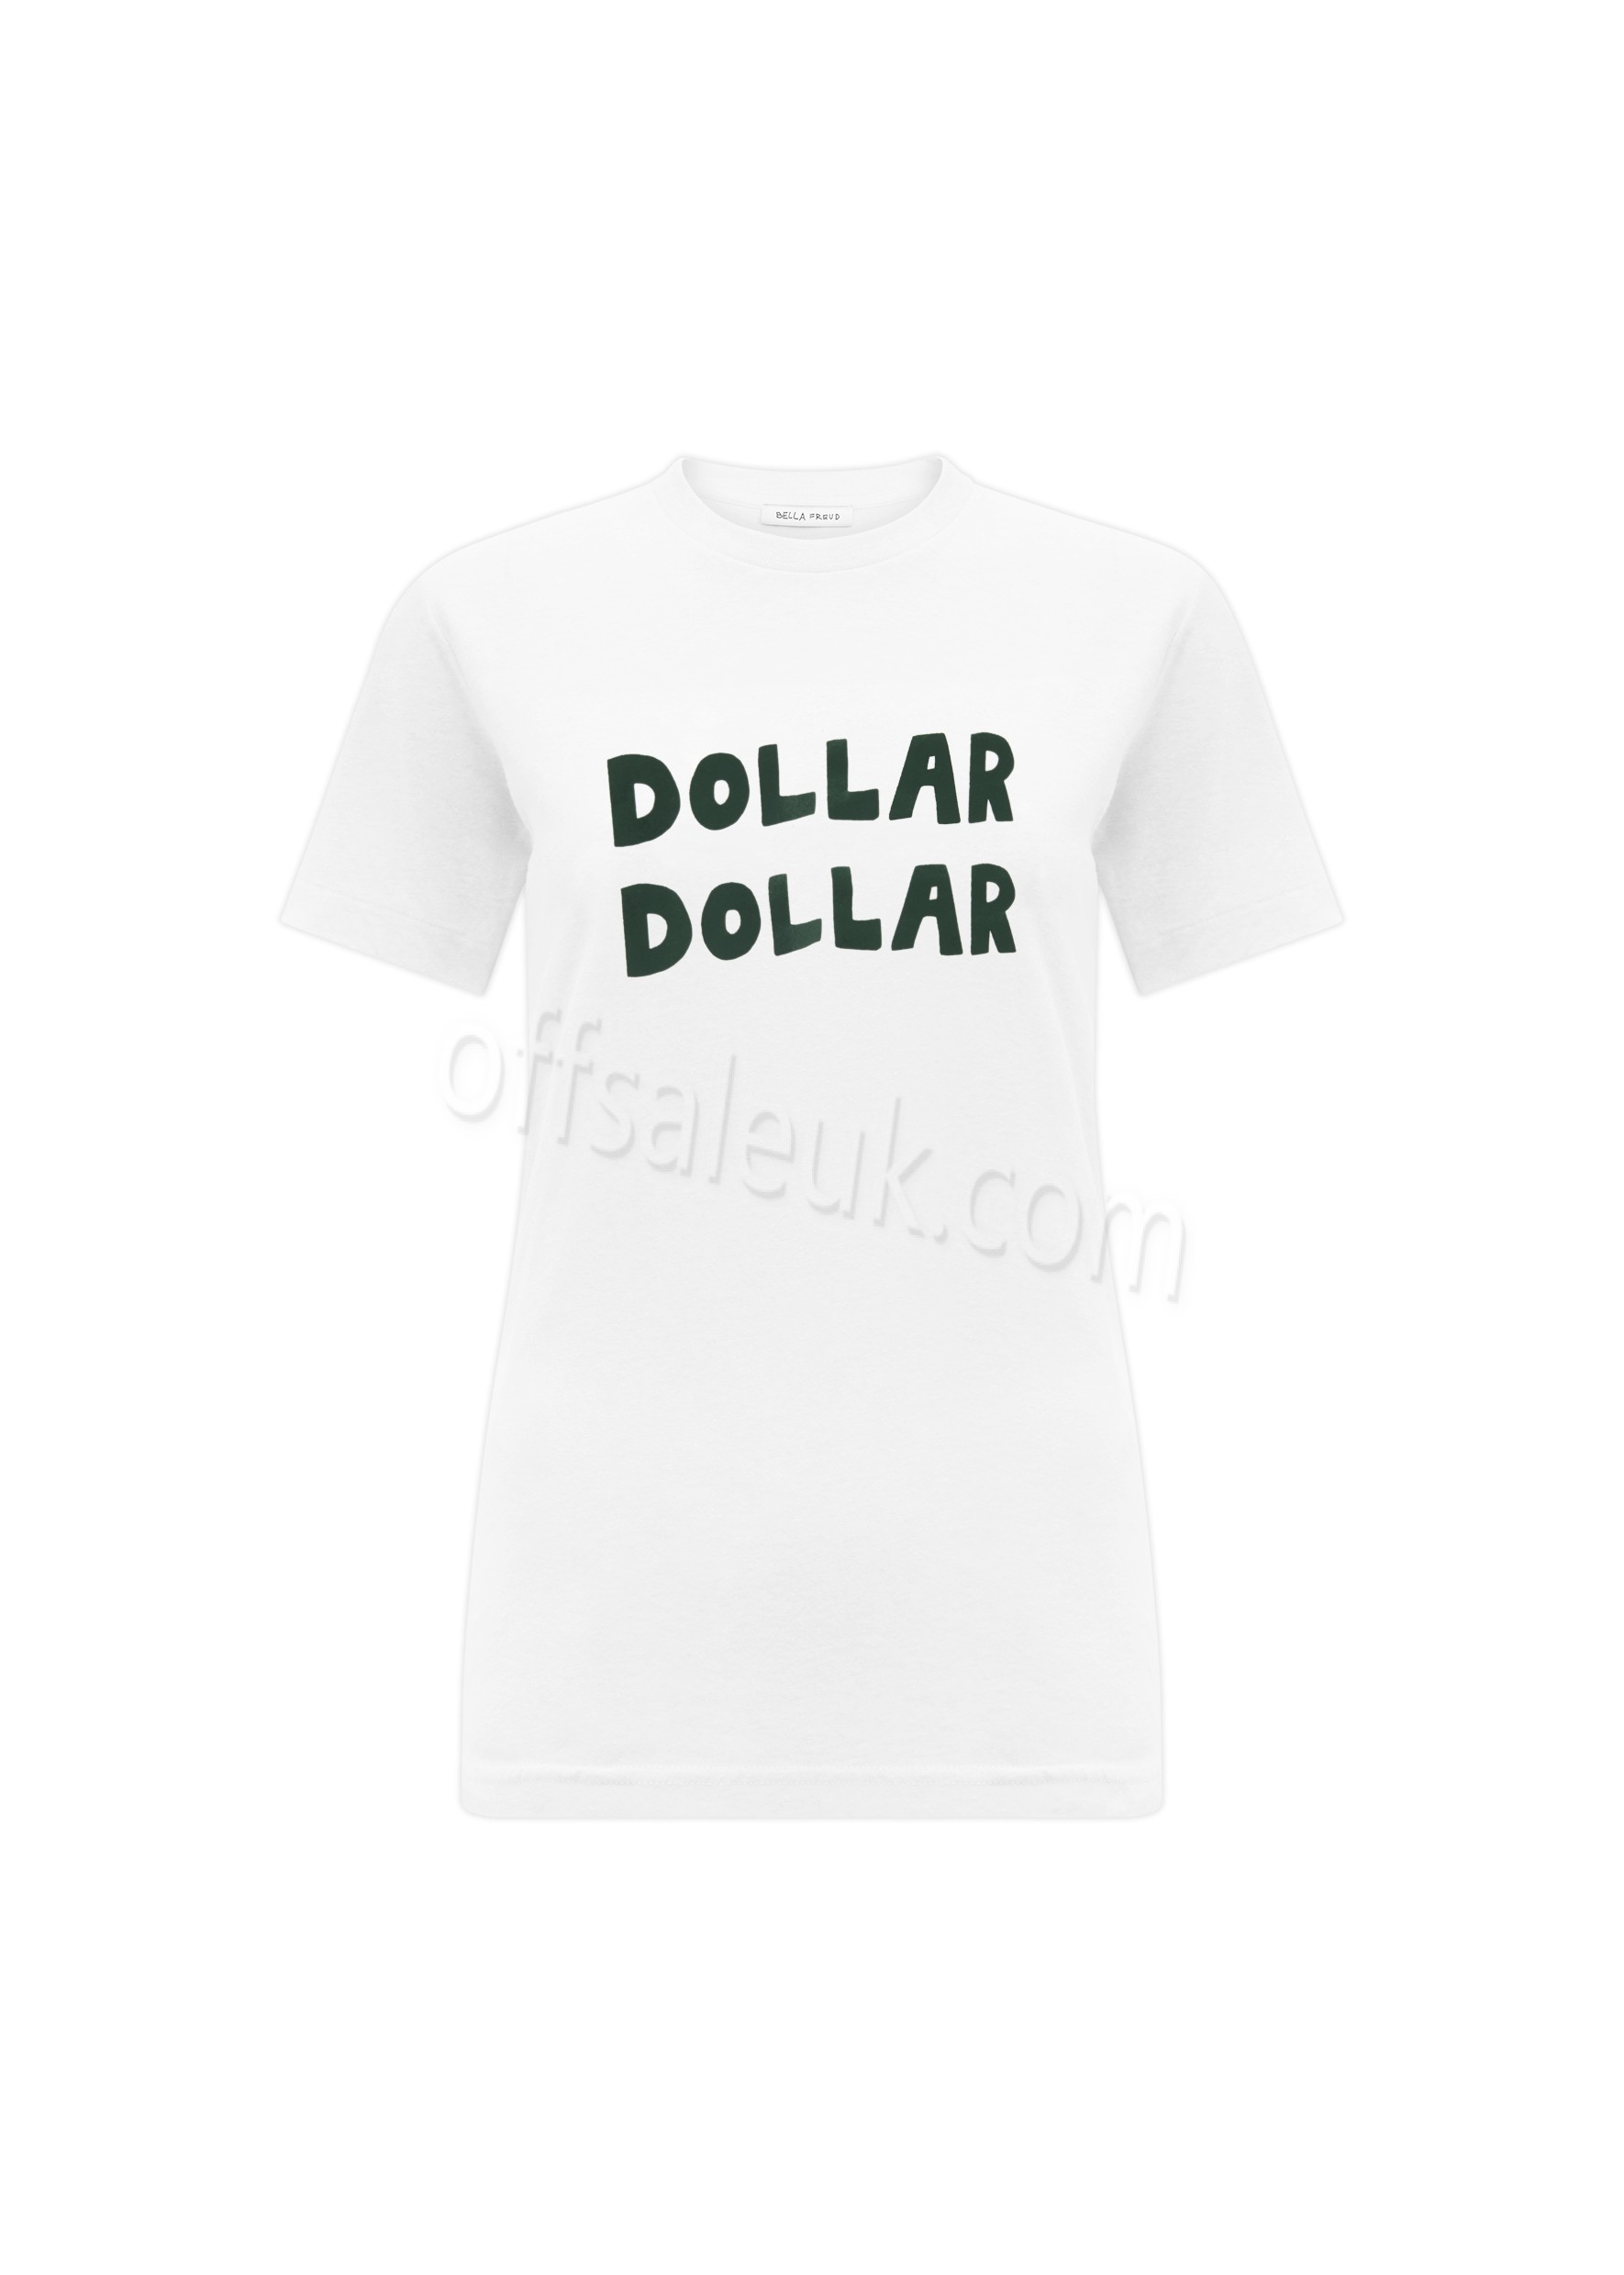 Bella Freud Dollar Dollar T-Shirt - Bella Freud Dollar Dollar T-Shirt